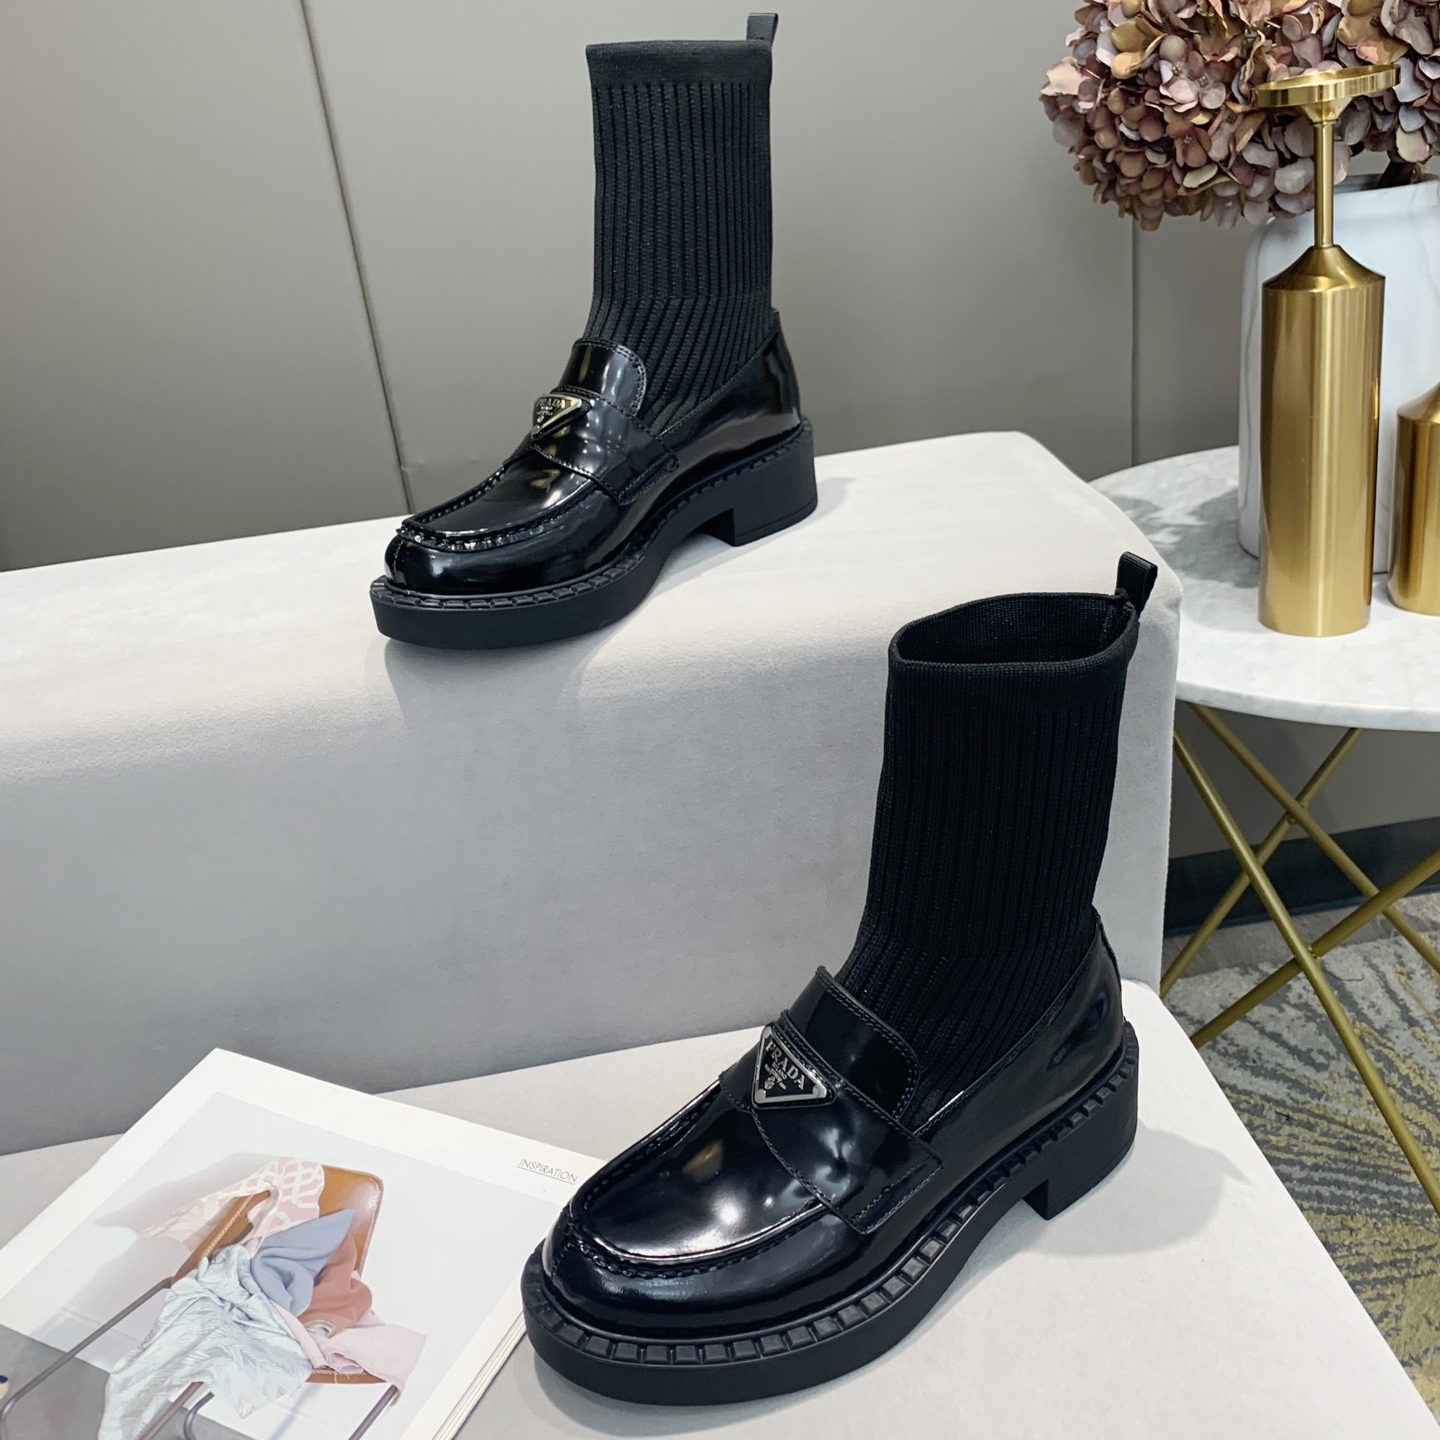 Cizme cu șosete de vânzare bună CalvinLuo, marca renumită de modă de lux, Milano Fashion Week, pantofi de marcă pentru femei și pantofi de designer falși, de asemenea, tocuri de înaltă calitate.